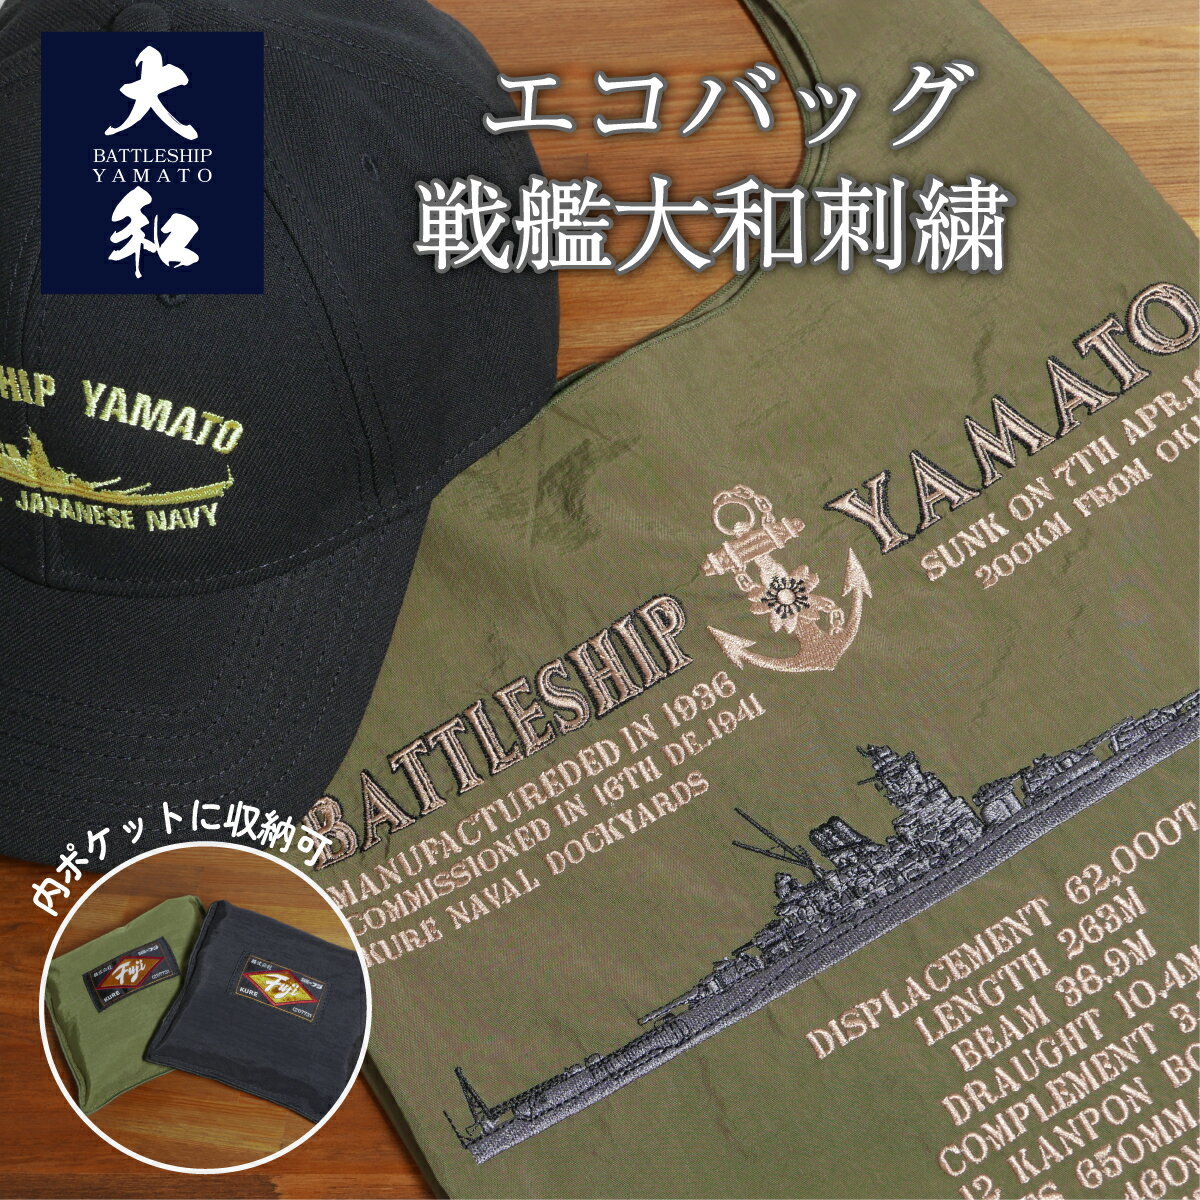 エコバッグ ( 戦艦大和刺繍 ) YAMATO 戦艦大和グッズ 大日本帝国海軍 ショッピングバッグ 手提げ コンパクト 折りたたみ 軽量 大容量 レジ袋 買い物 コンビニバッグ マチ広 刺繍 ネコポス可